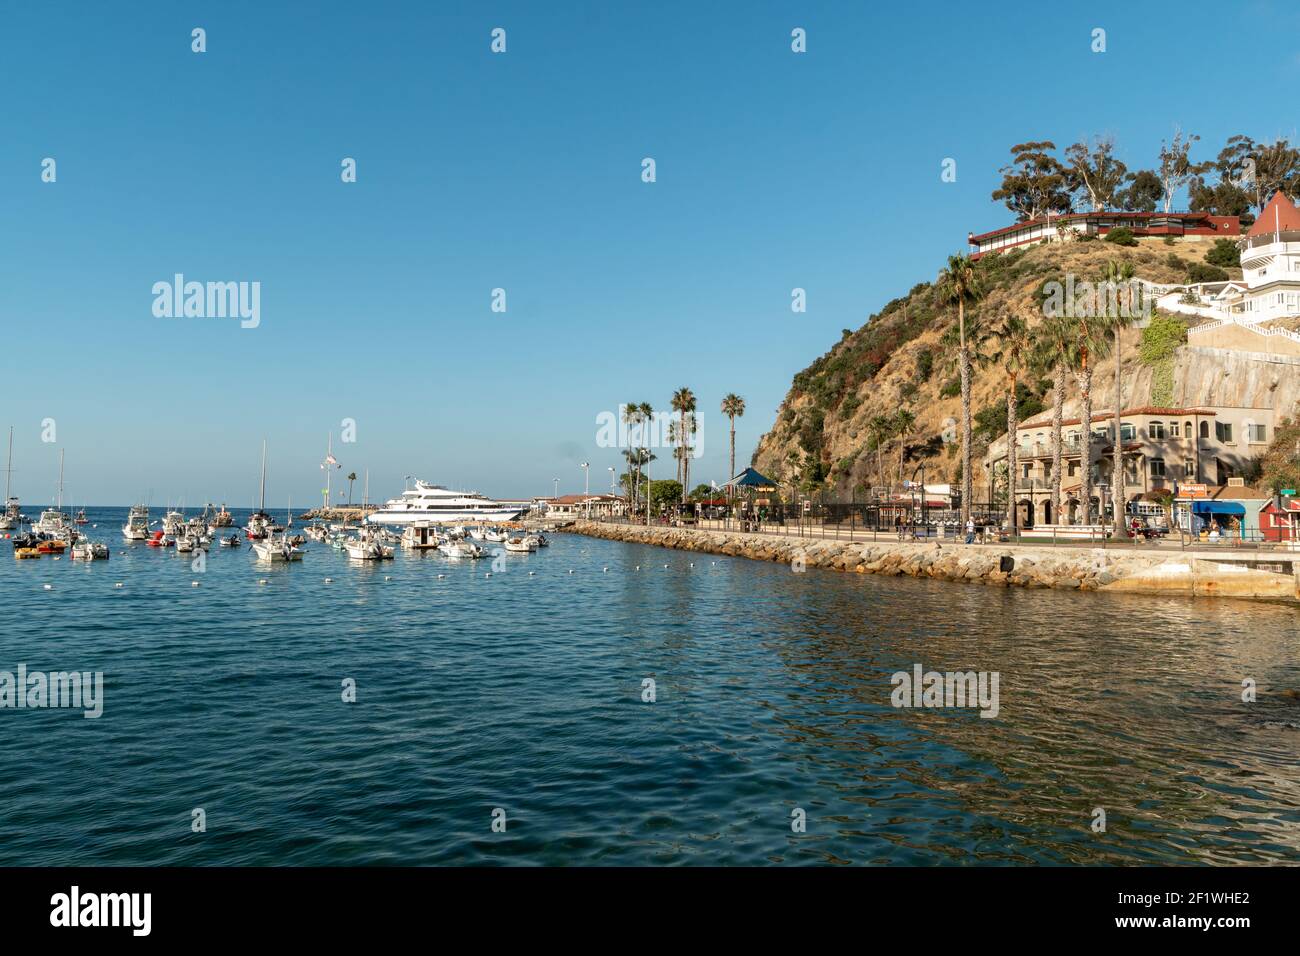 Avalon bay with small boat in Santa Catalina Island, USA Stock Photo